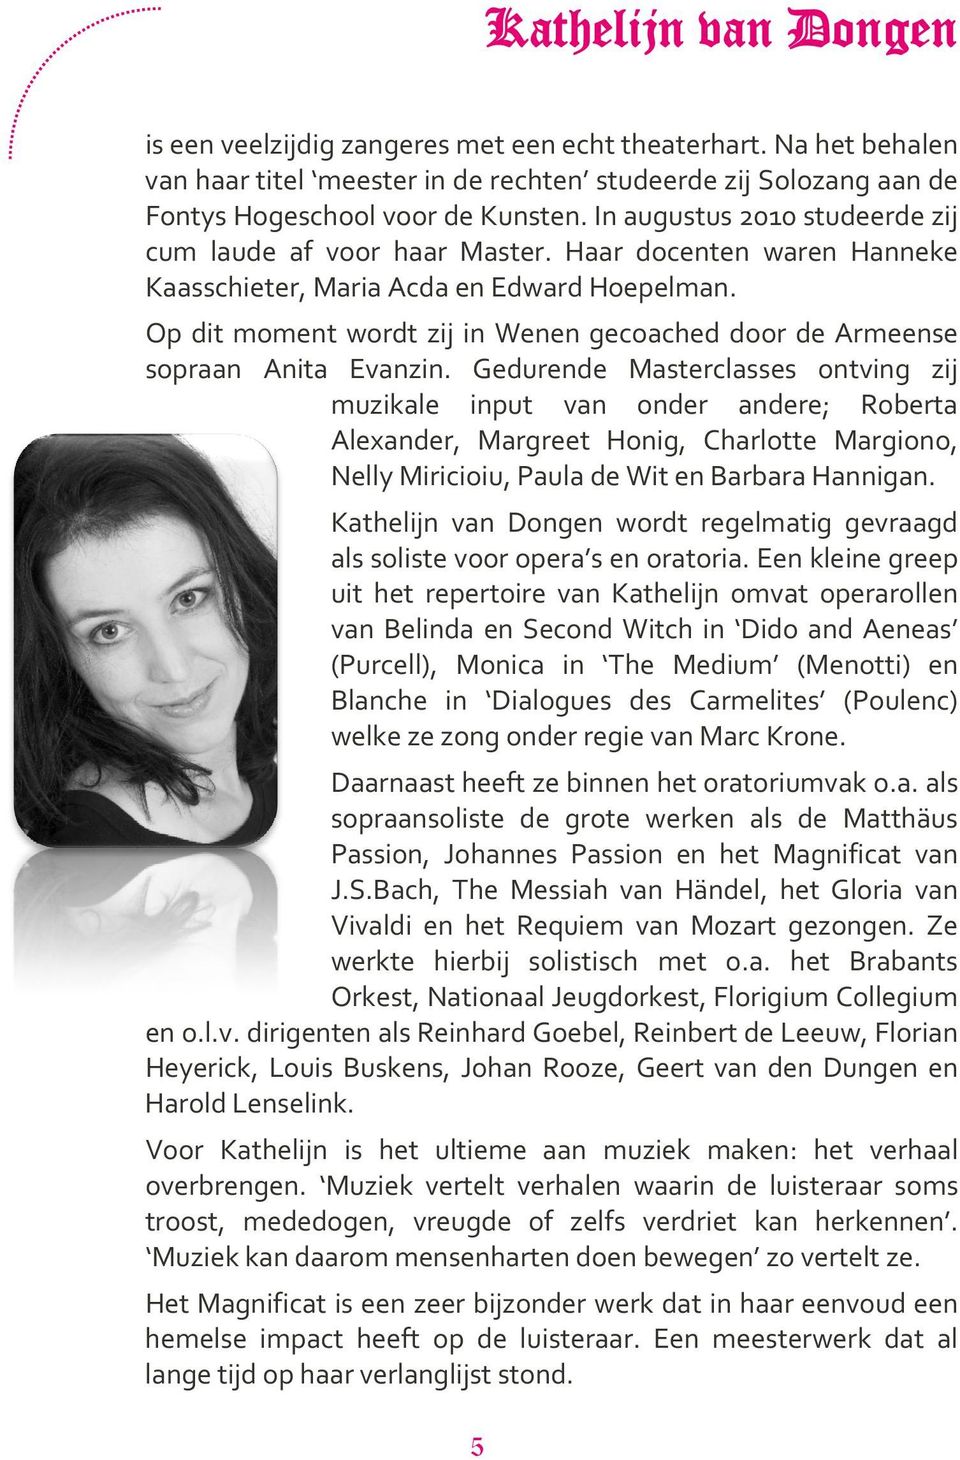 Op dit moment wordt zij in Wenen gecoached door de Armeense sopraan Anita Evanzin.